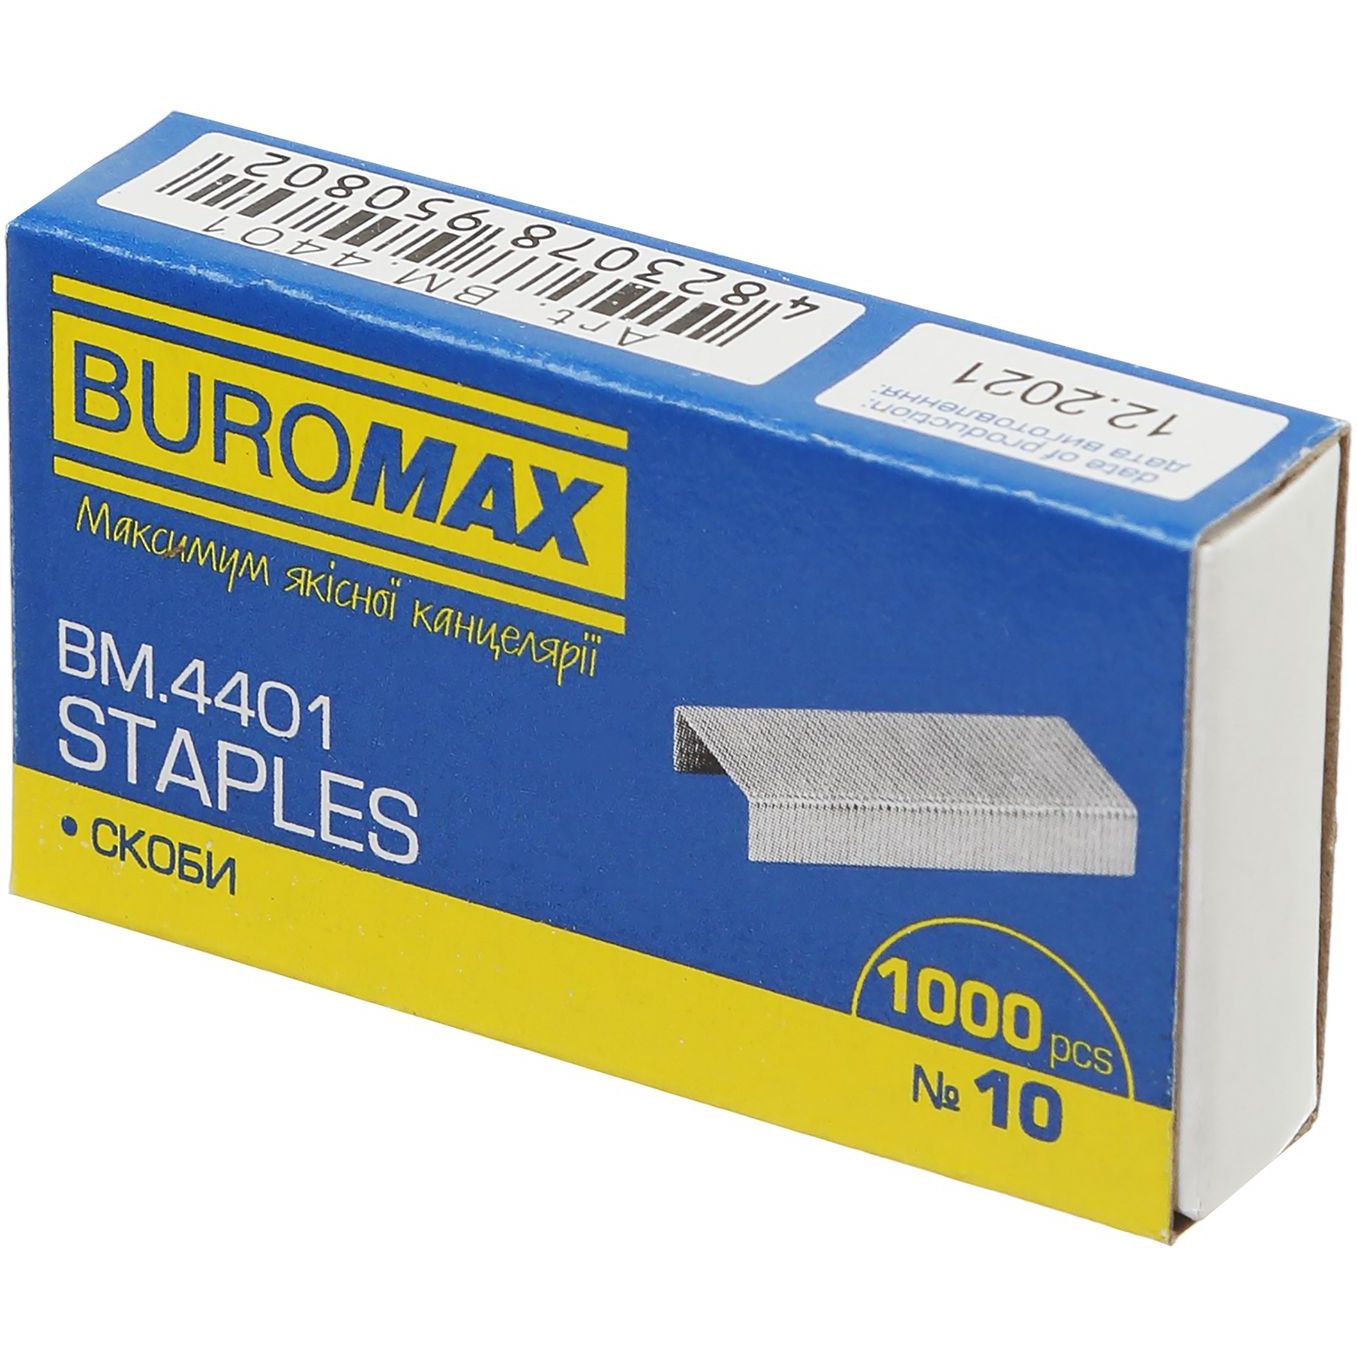 Скоби для степлерів Buromax Jobmax №10 1000 шт. (BM.4401) - фото 1